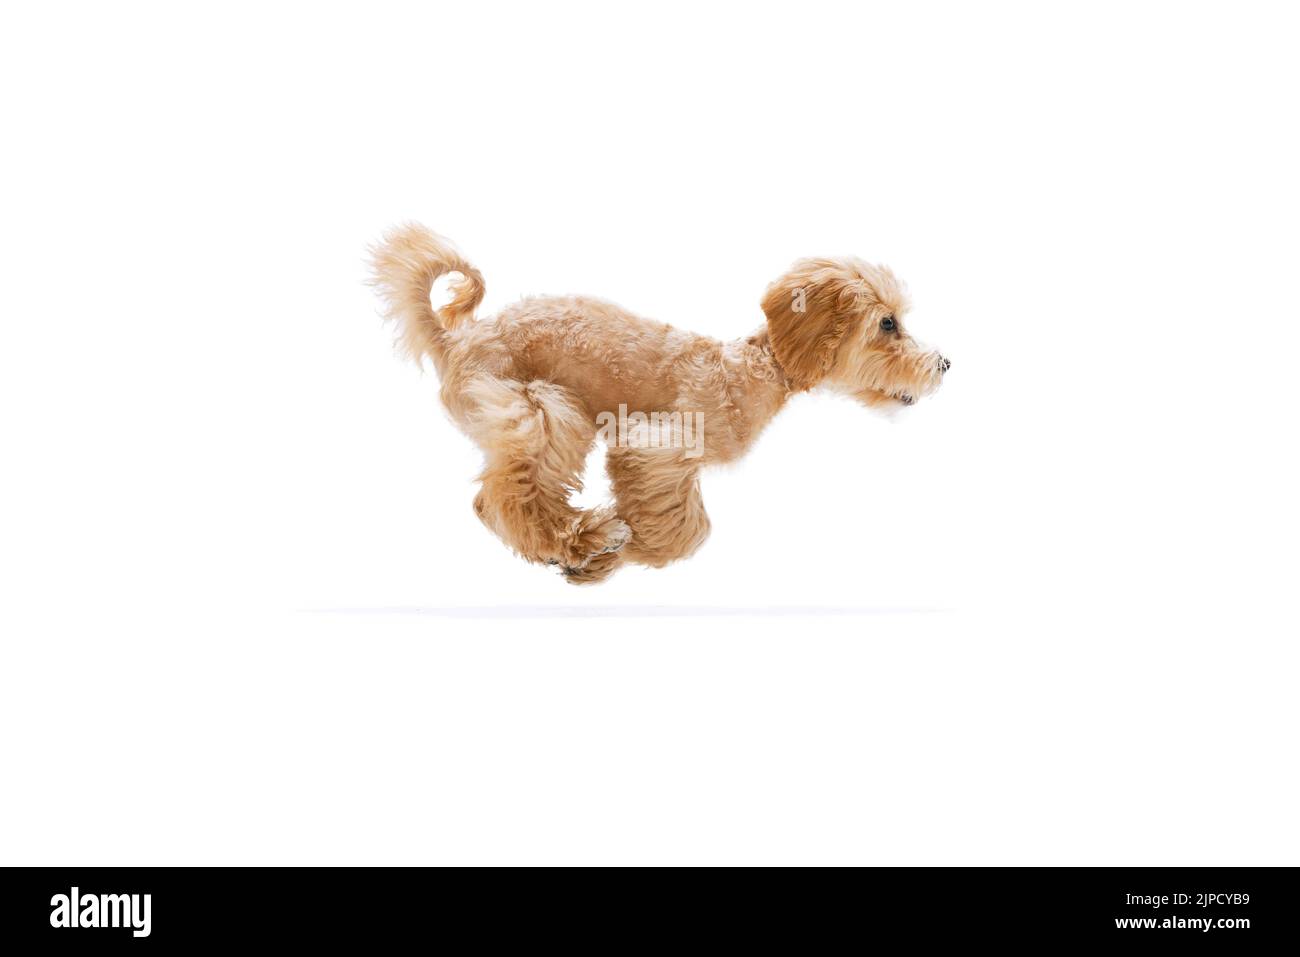 Beau pedigree chiot, Maltipoo chien isolé sur fond blanc studio. Concept de soins, vie animale, santé, annonce, spectacle, race de chien Banque D'Images